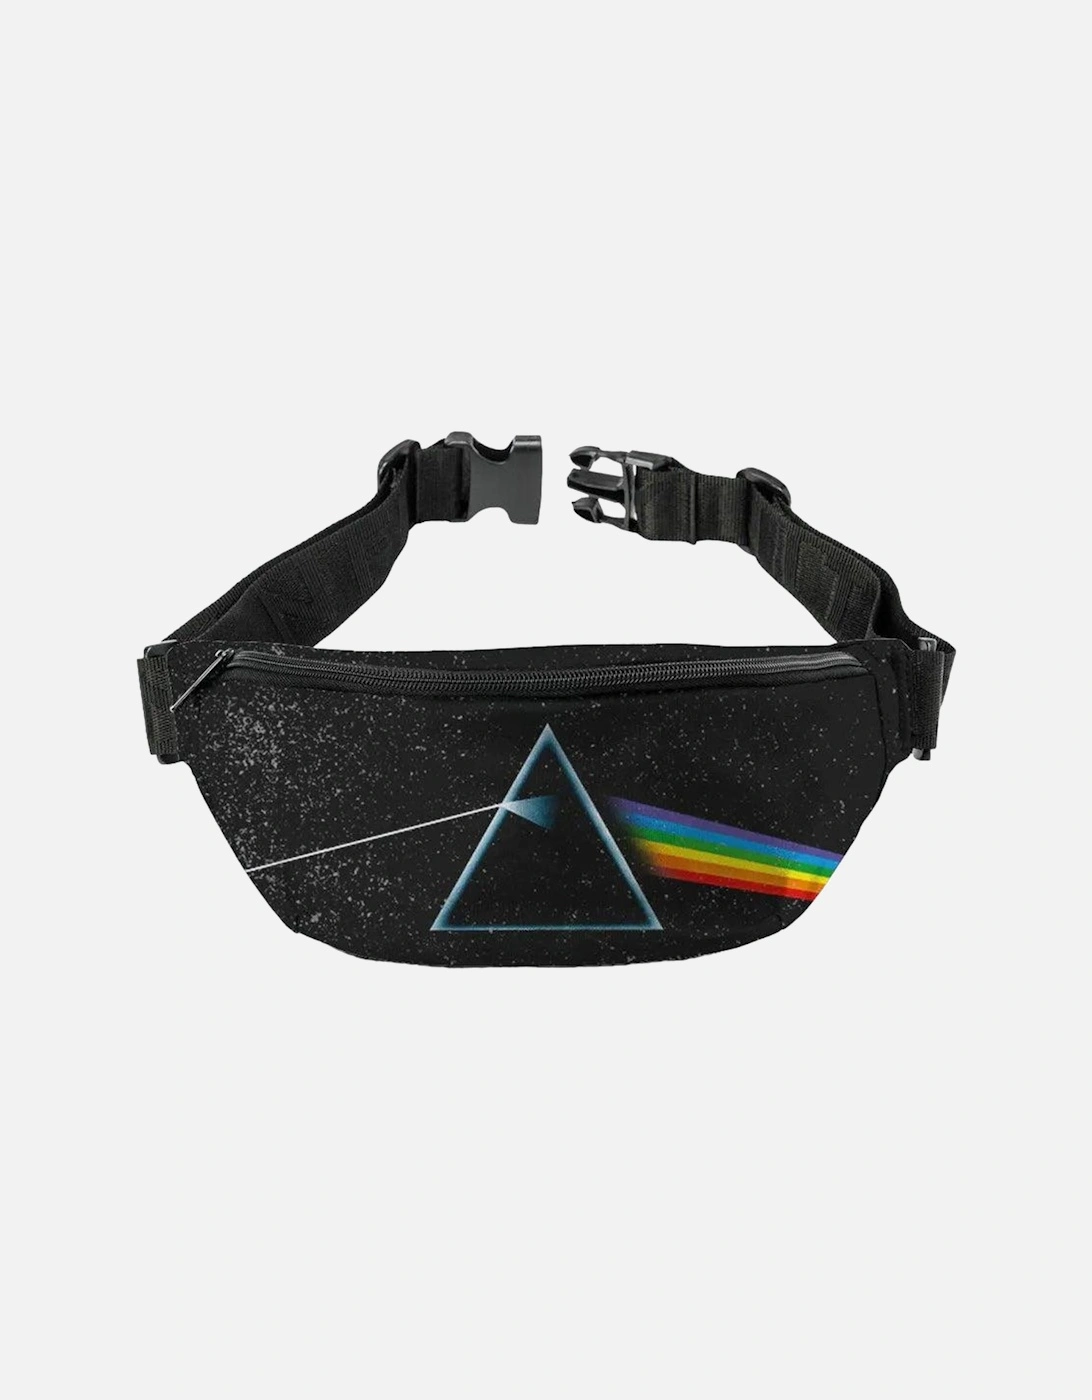 Dark Side Of The Moon Pink Floyd Bum Bag, 2 of 1